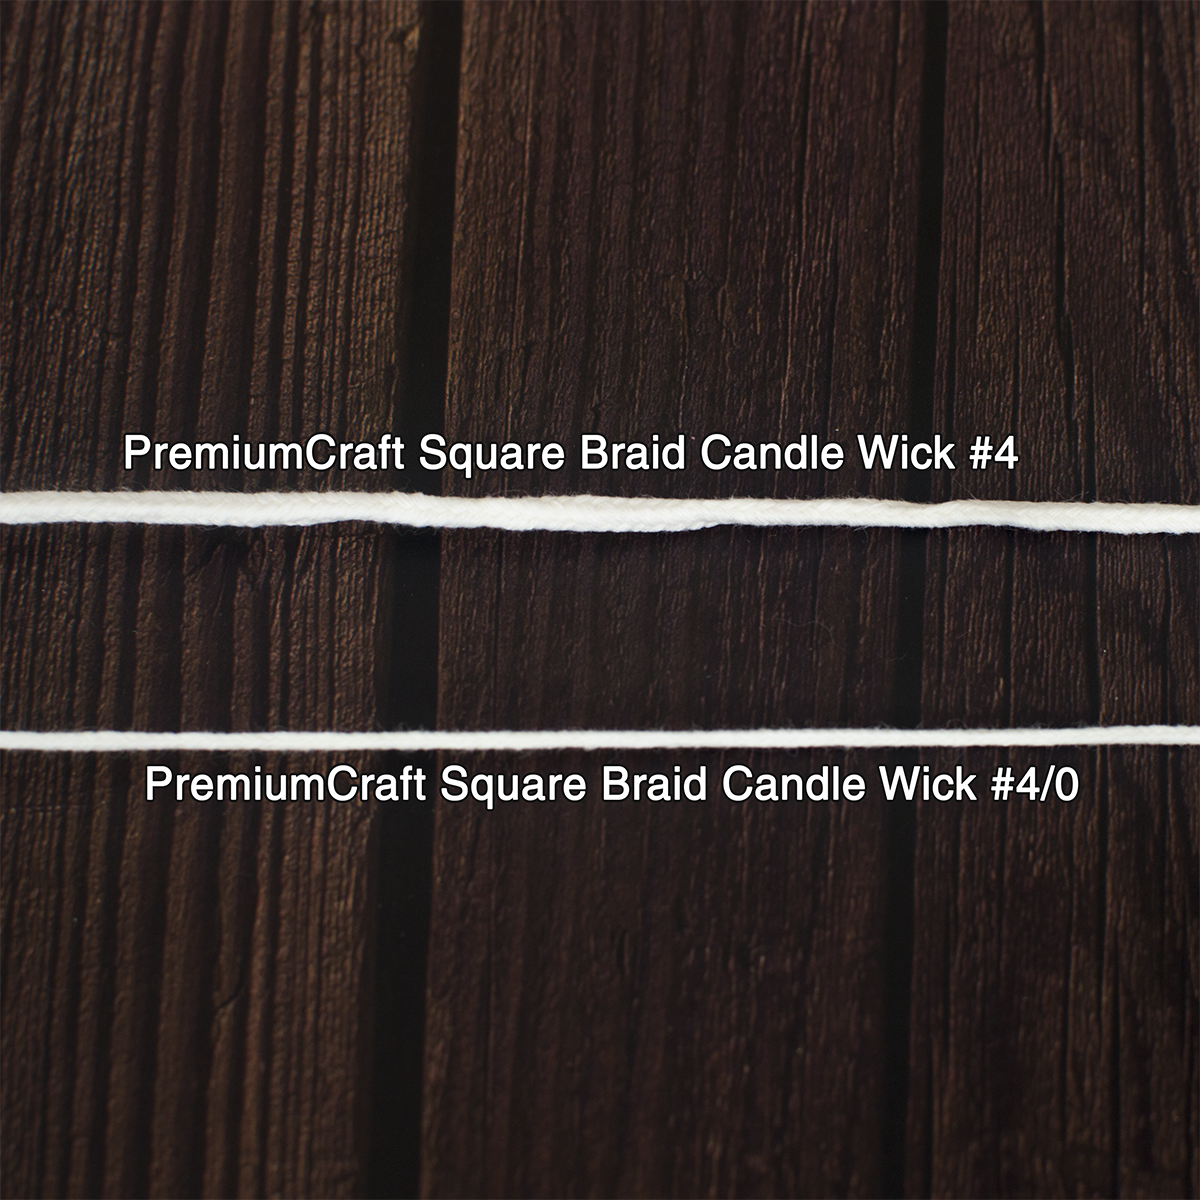 PremiumCraft Square Braid Cotton Candle Wick #4